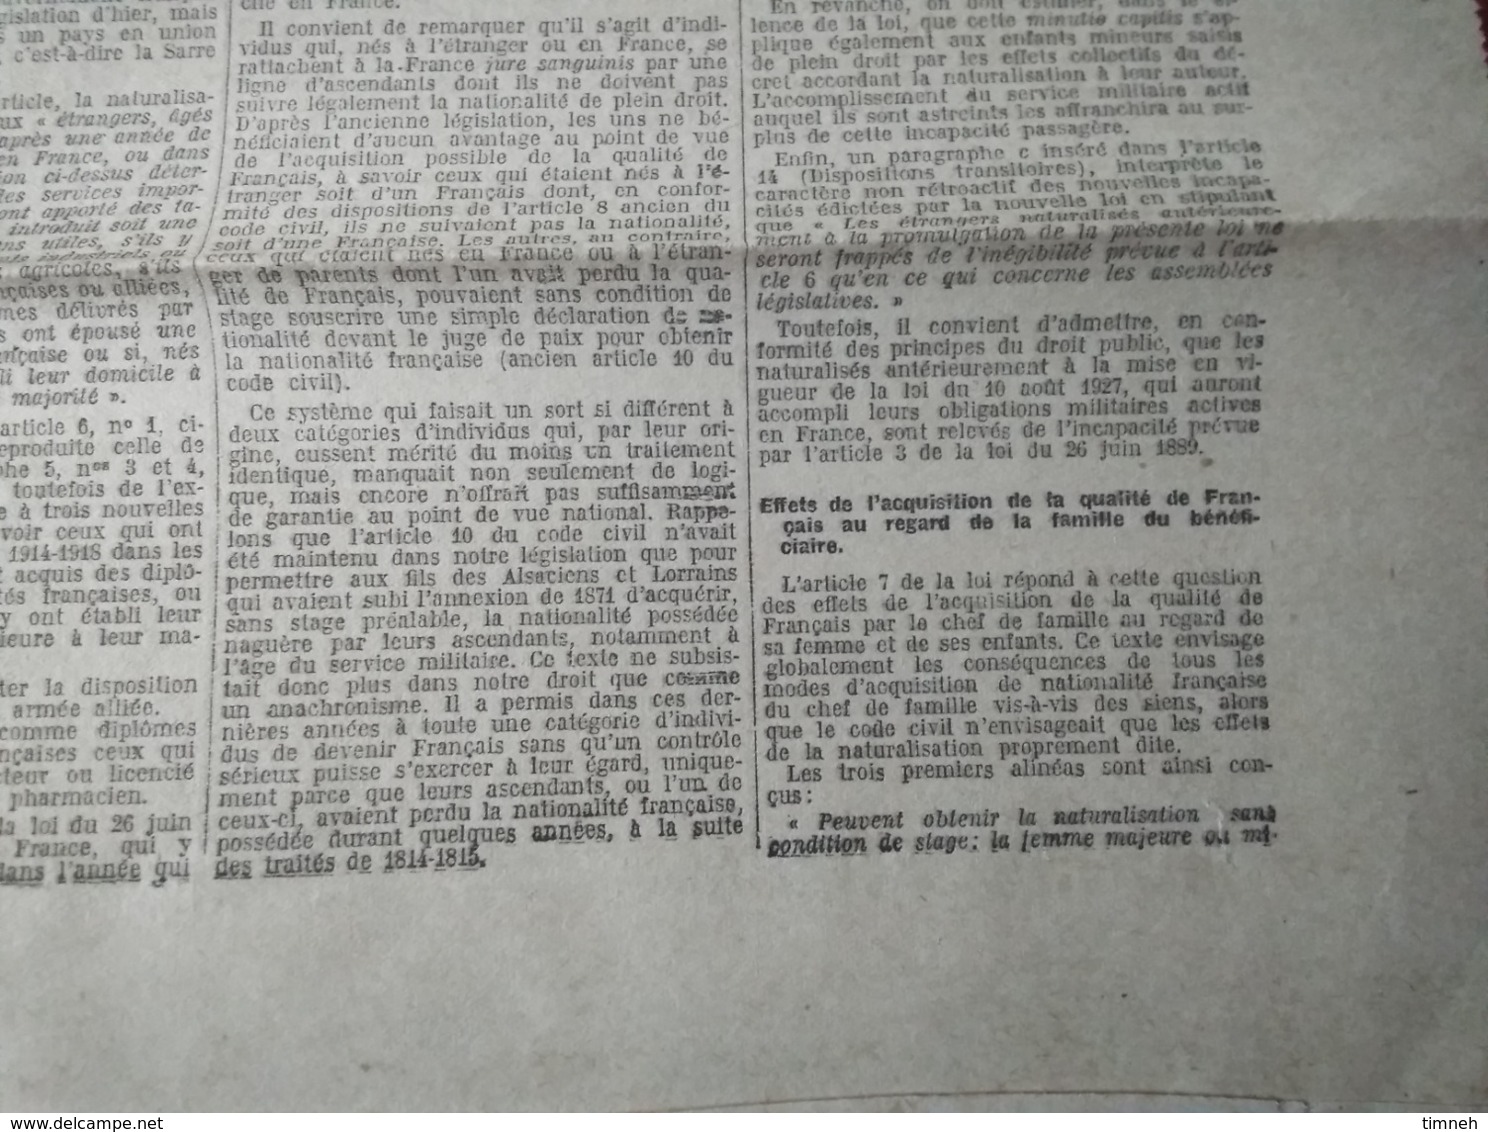 14 AOUT 1927 - LOI SUR LA NATIONALITE SUIVIE DES DECRET ET INSTRUCTIONS N°146 - JOURNAL OFFICIEL